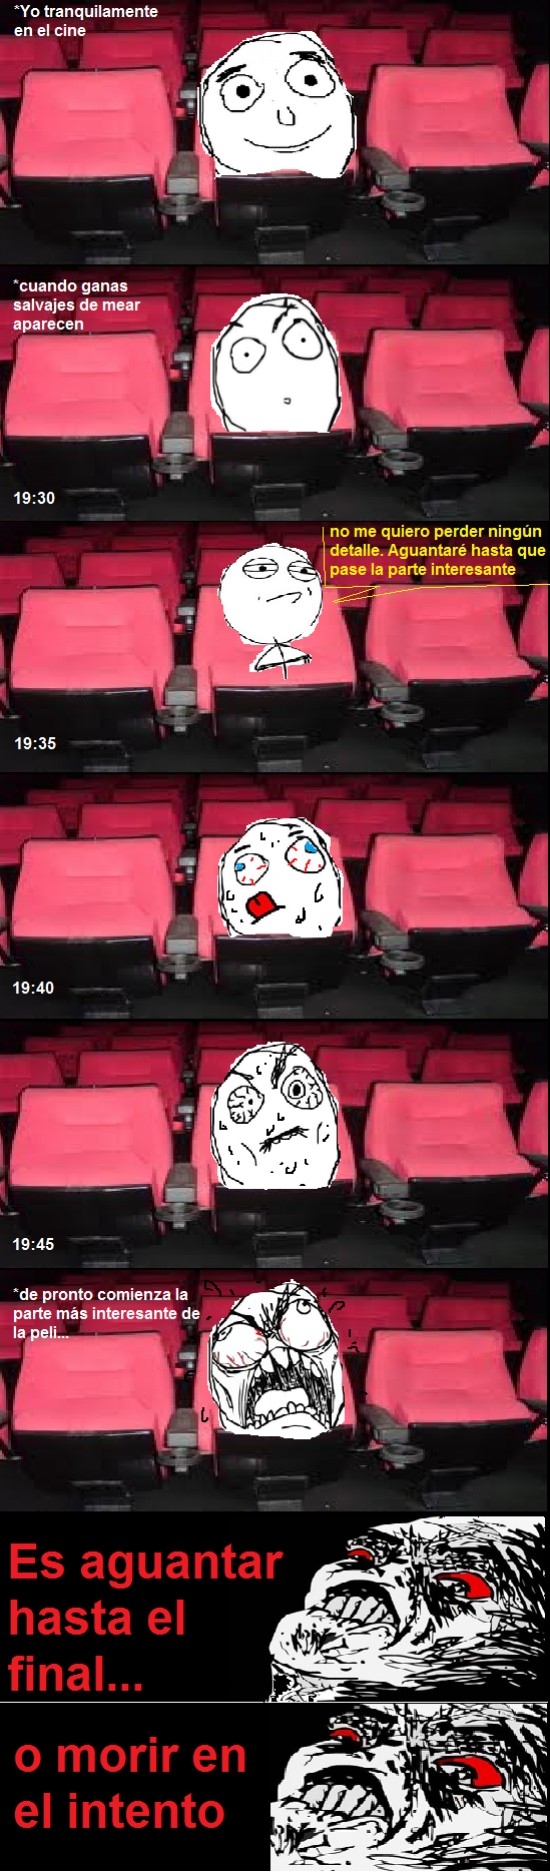 Inglip - La trollvejiga: solo en cines